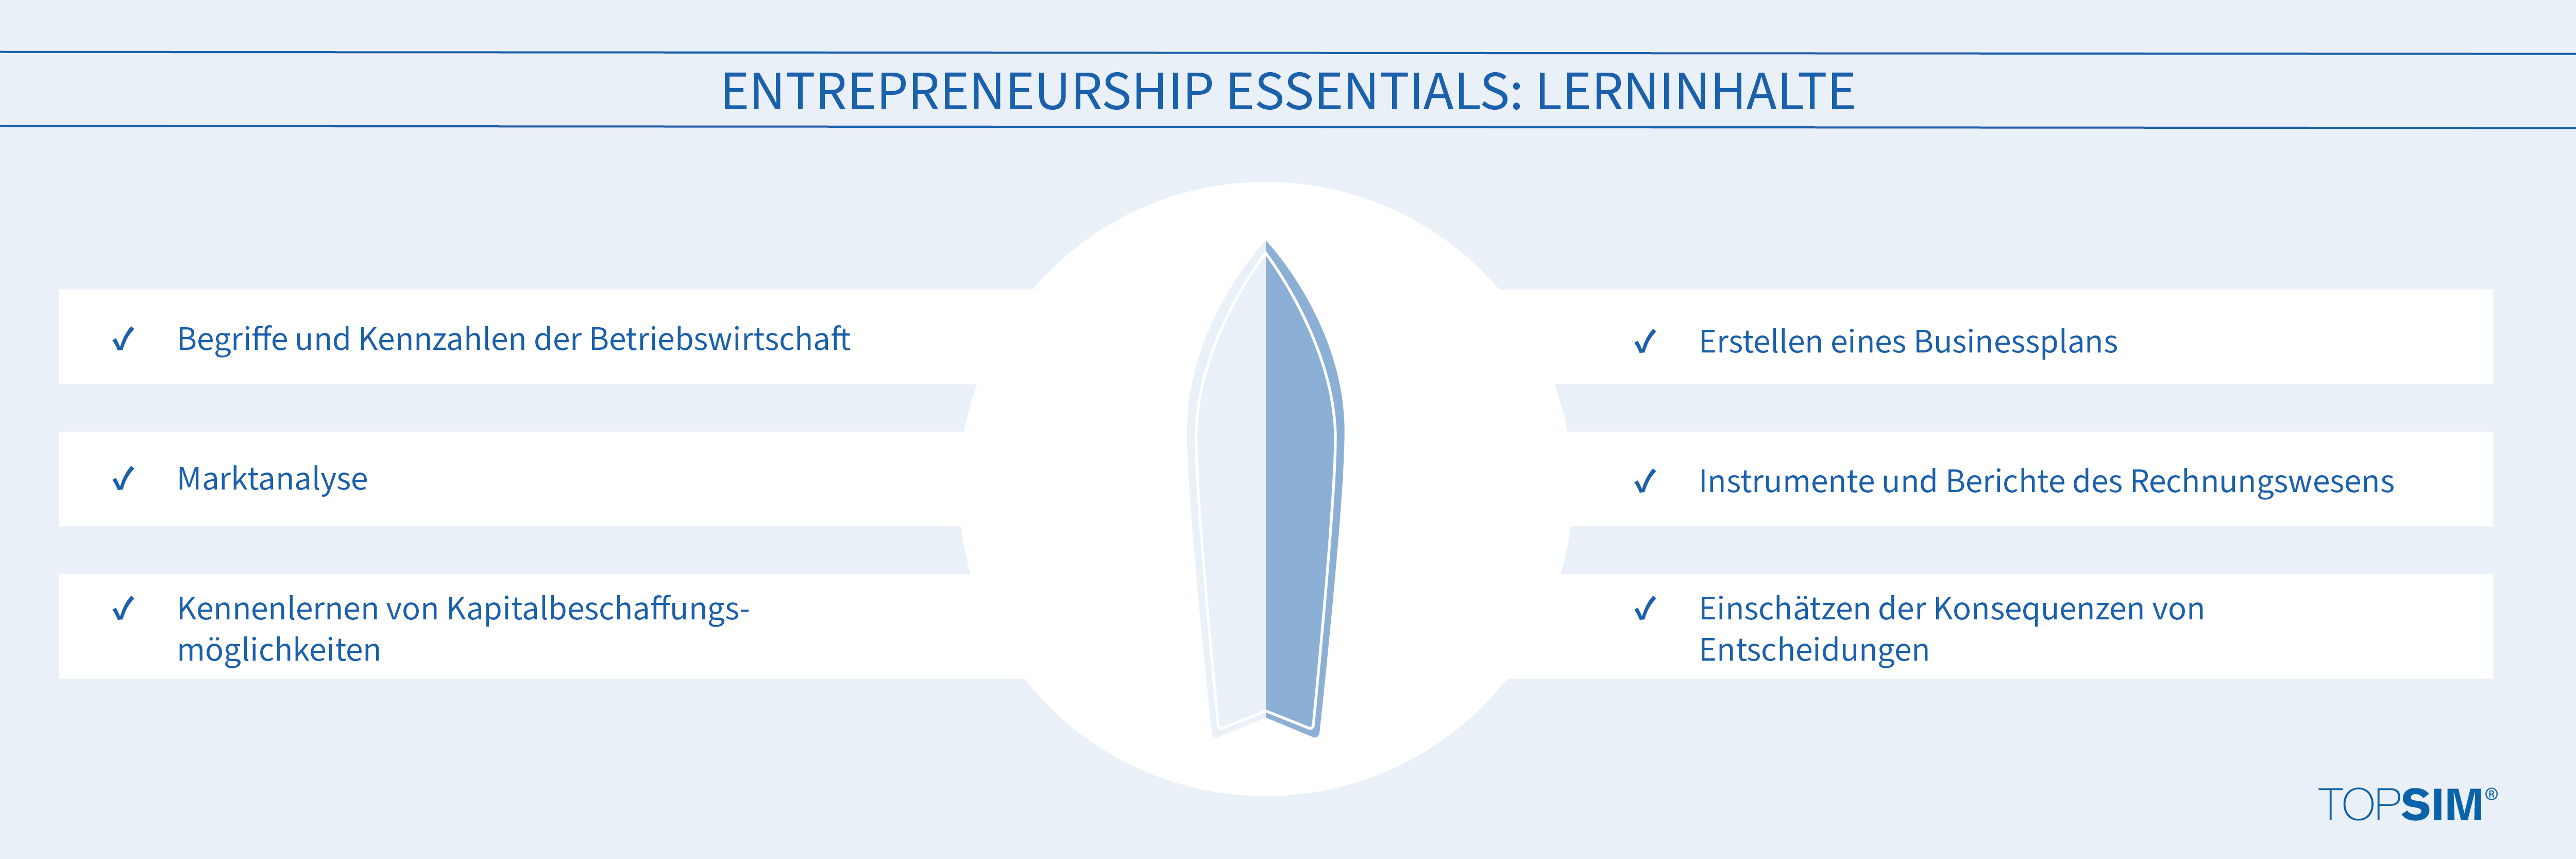 Planspiele stellen sich vor: Entrepreneurship Essentials